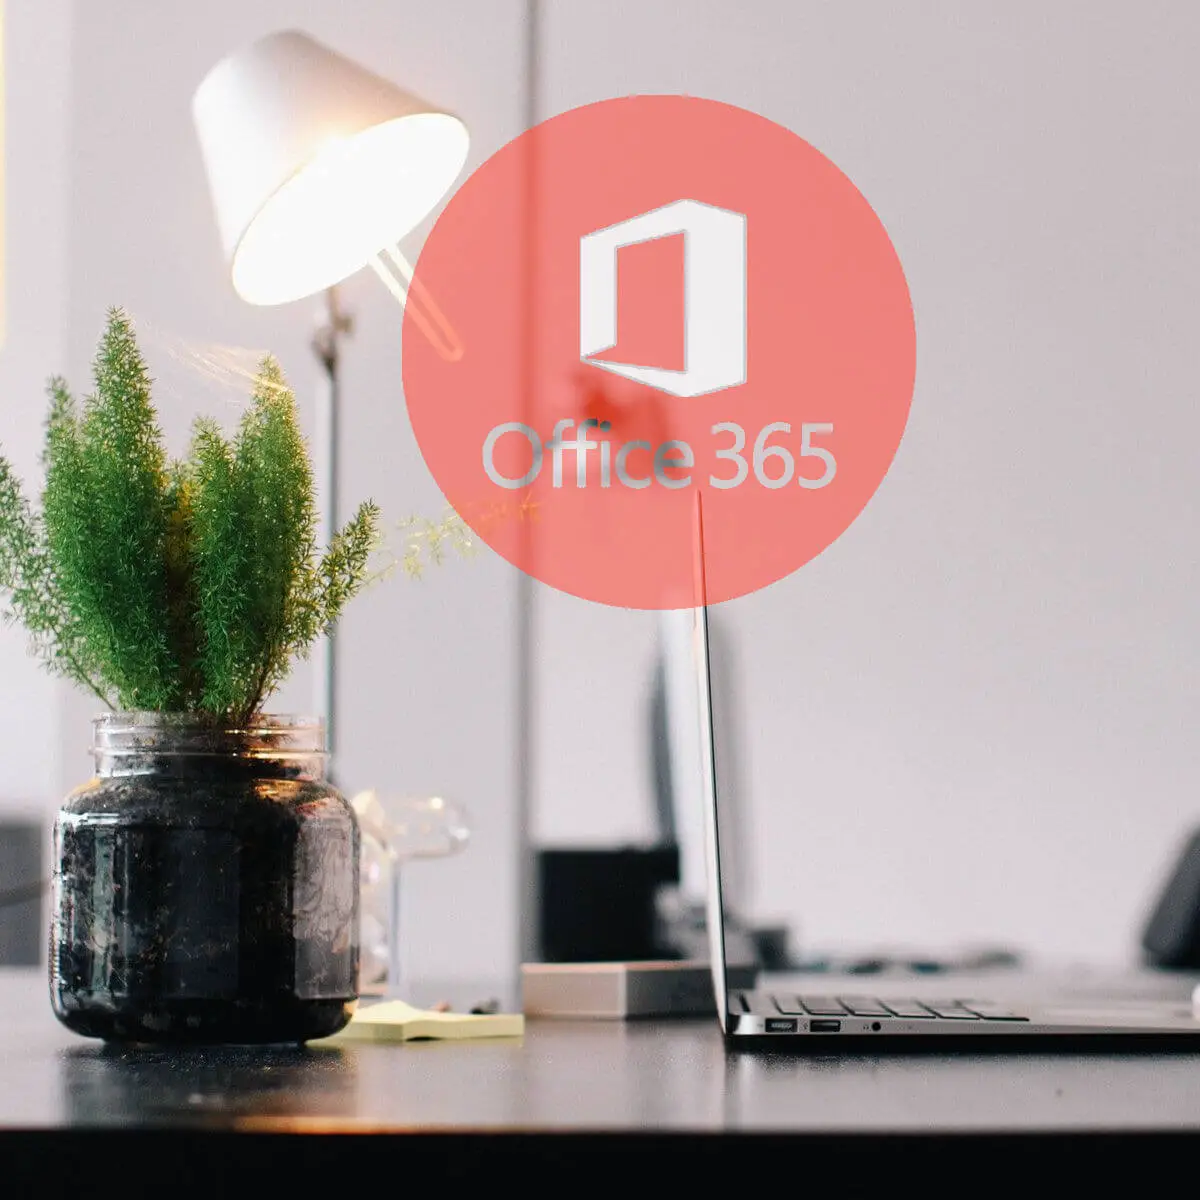 Solución: problemas conocidos de Microsoft Office 365 [Full Guide] -  Expertos En Linea